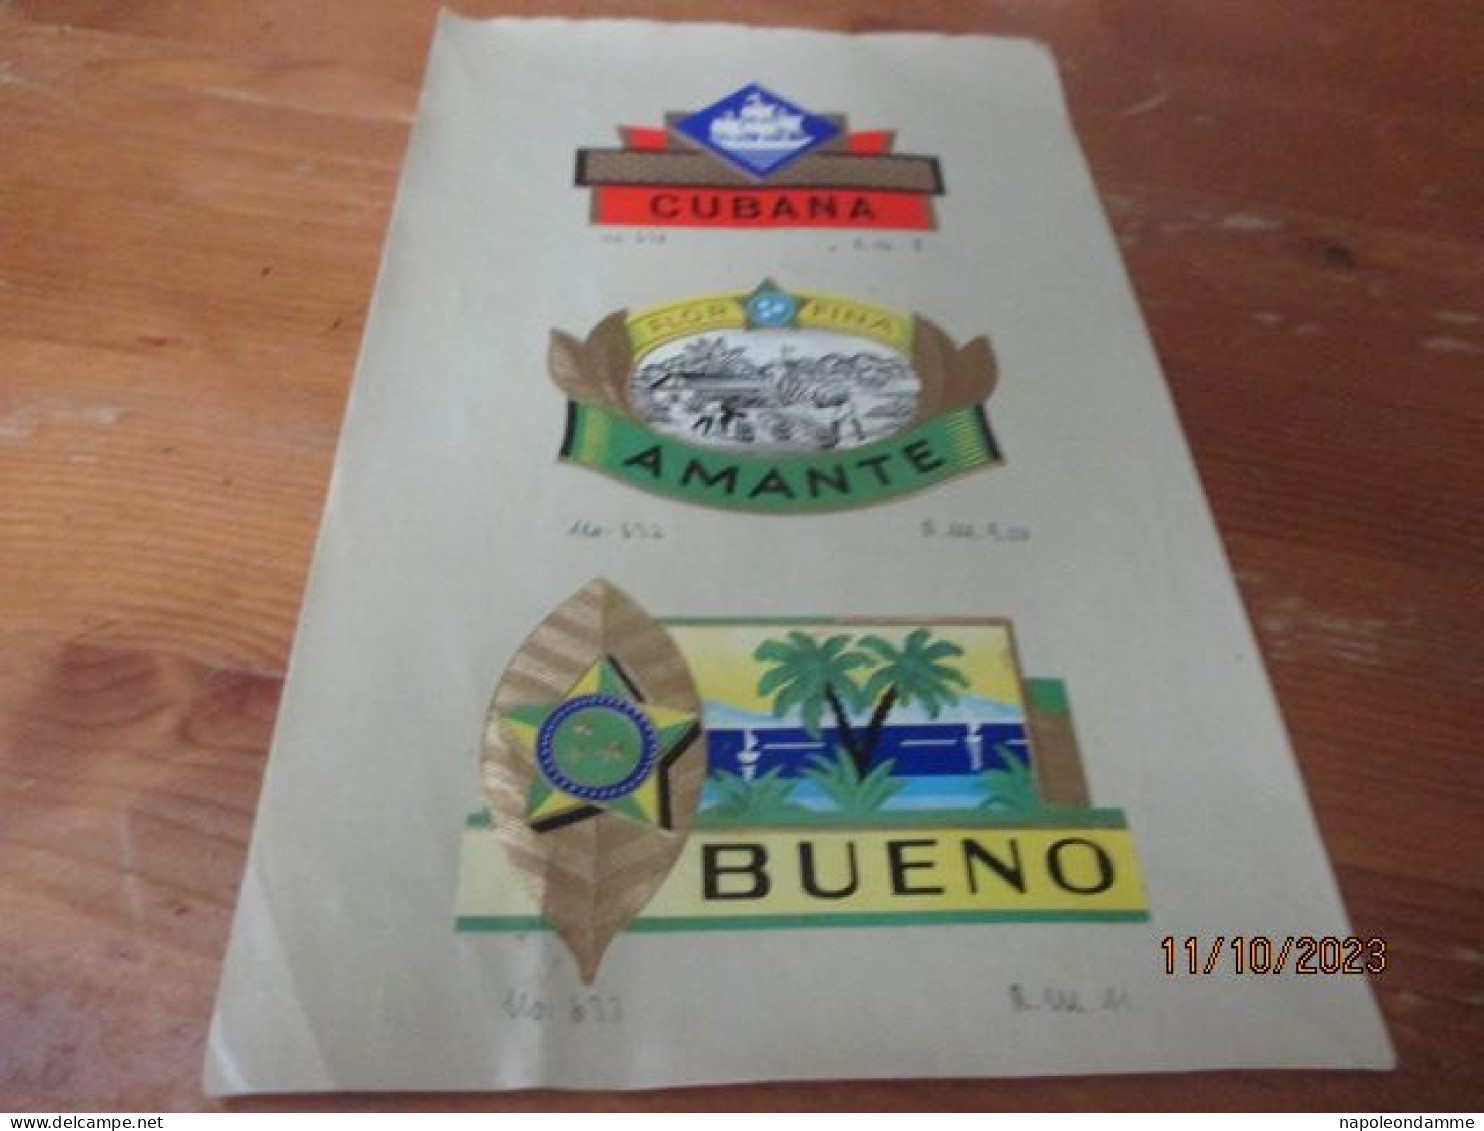 Etiketten Voorbeeldblad, 16 Cm X 25.50cm, Cubana, Amante, Bueno - Etiquetas